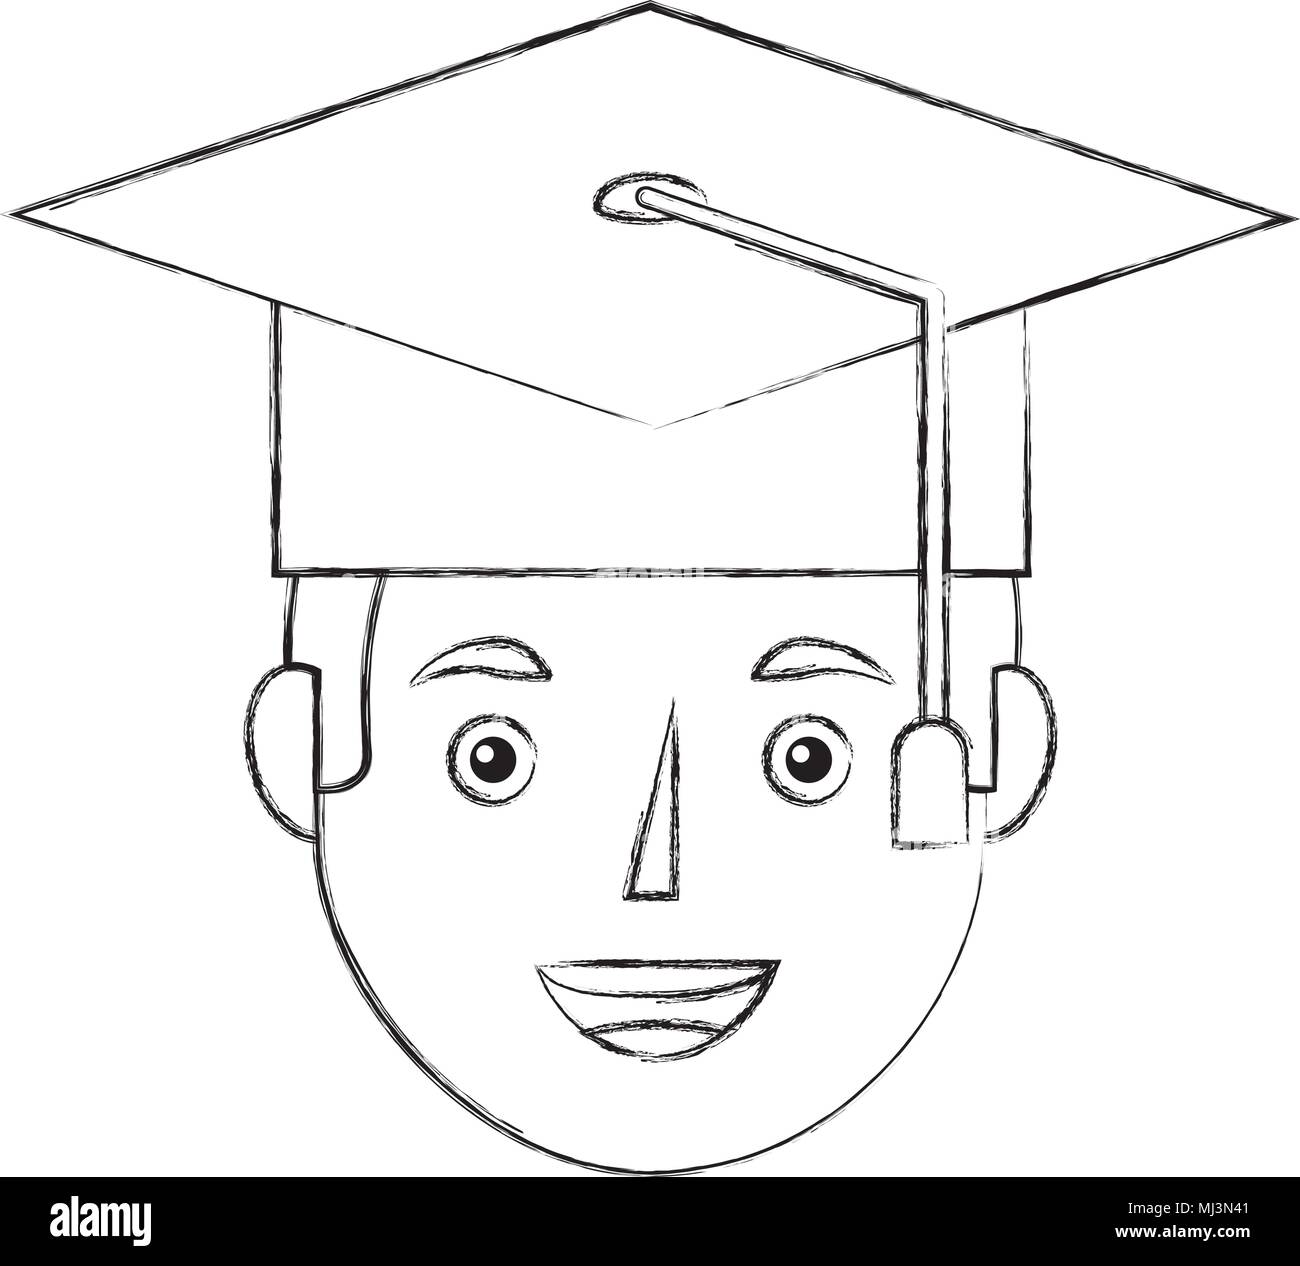 Jeune diplômé man portrait croquis d'illustration vectorielle de l'image de caractère Illustration de Vecteur